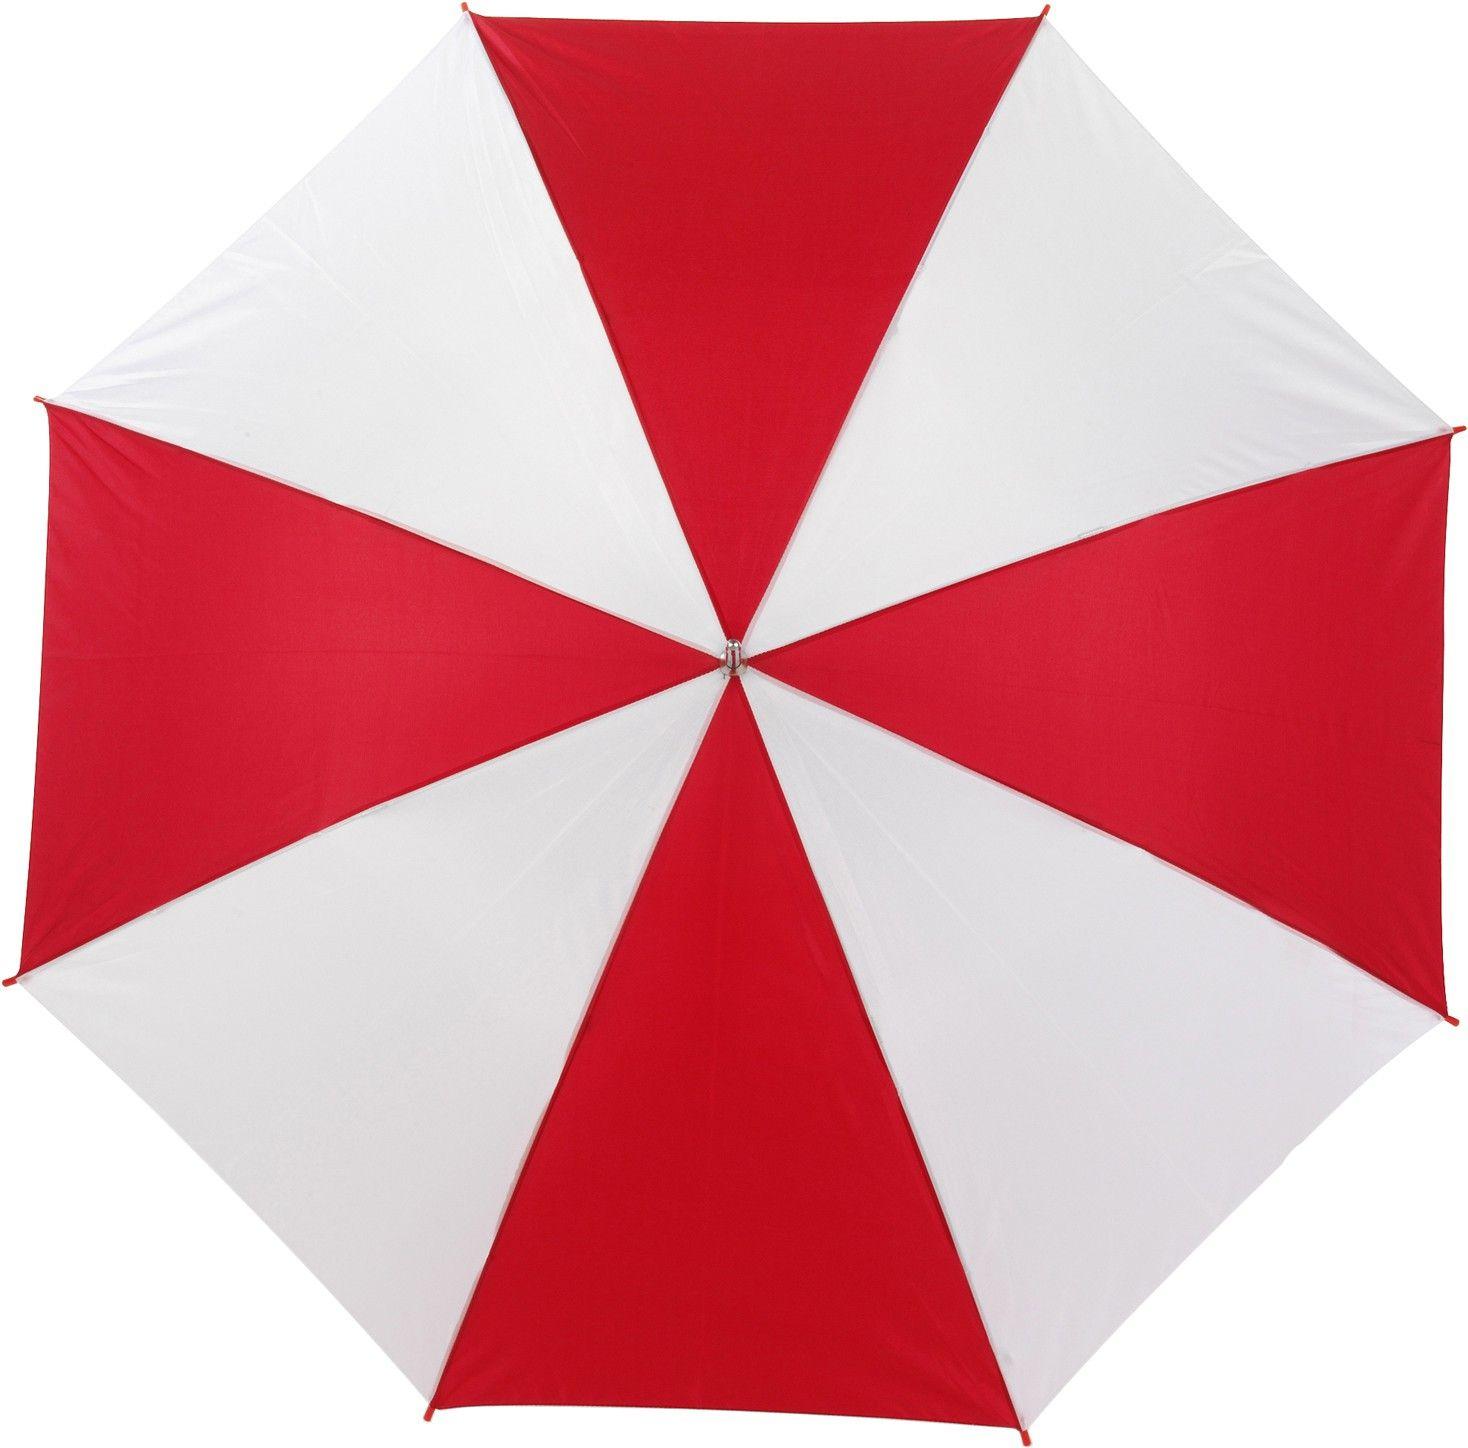 White and Red Umbrella Logo - Automatic umbrella, Red/white (Storm umbrella) - Reklámajándék.hu Ltd.